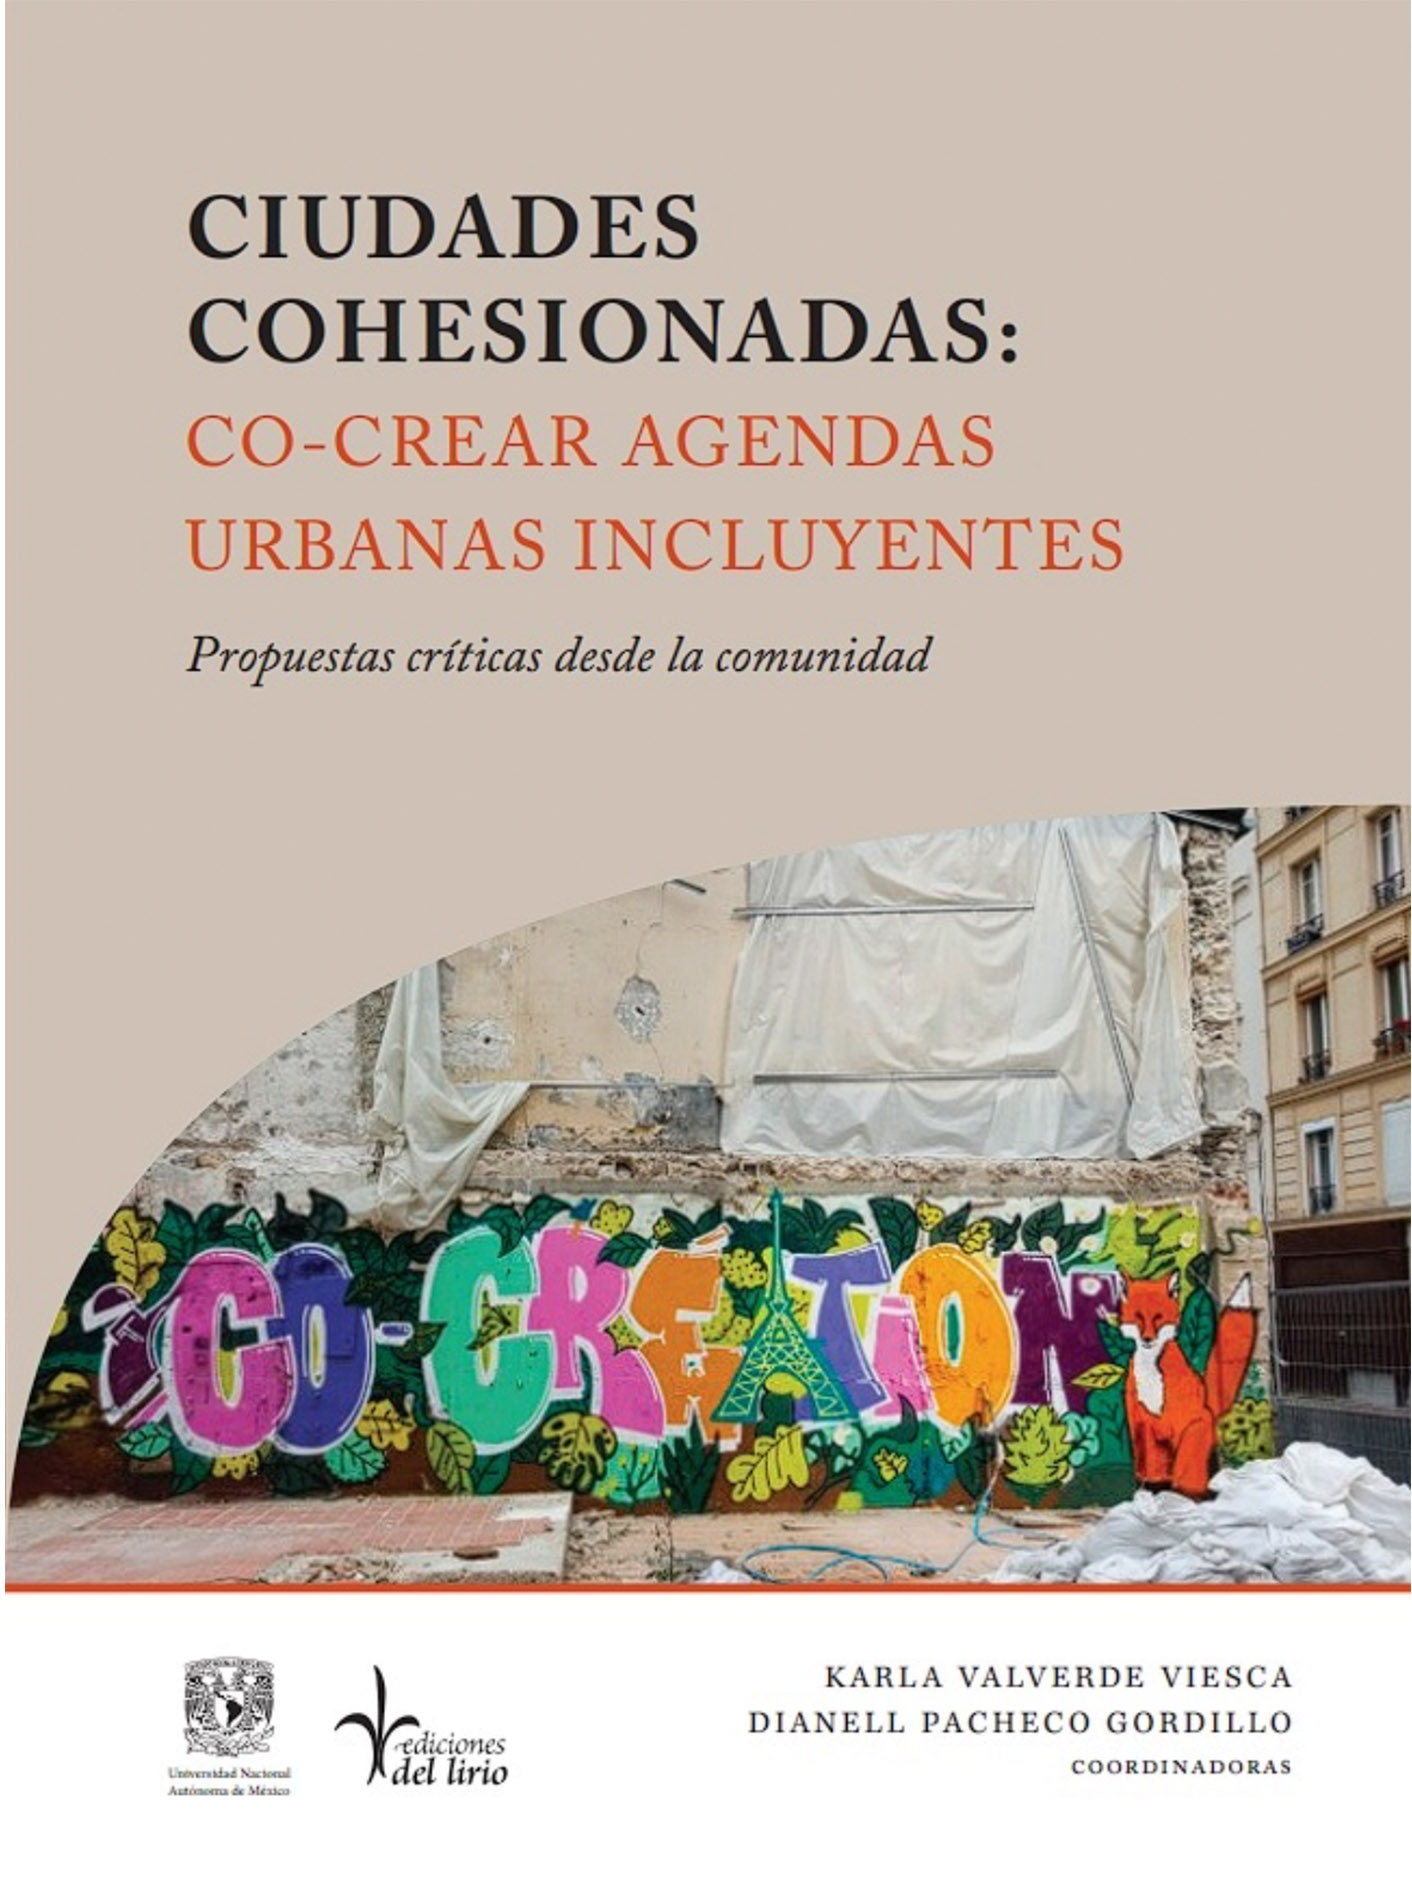 Ciudades cohesionadas: Co-crear agendas urbanas incluyentes. Propuestas críticas desde la comunidad